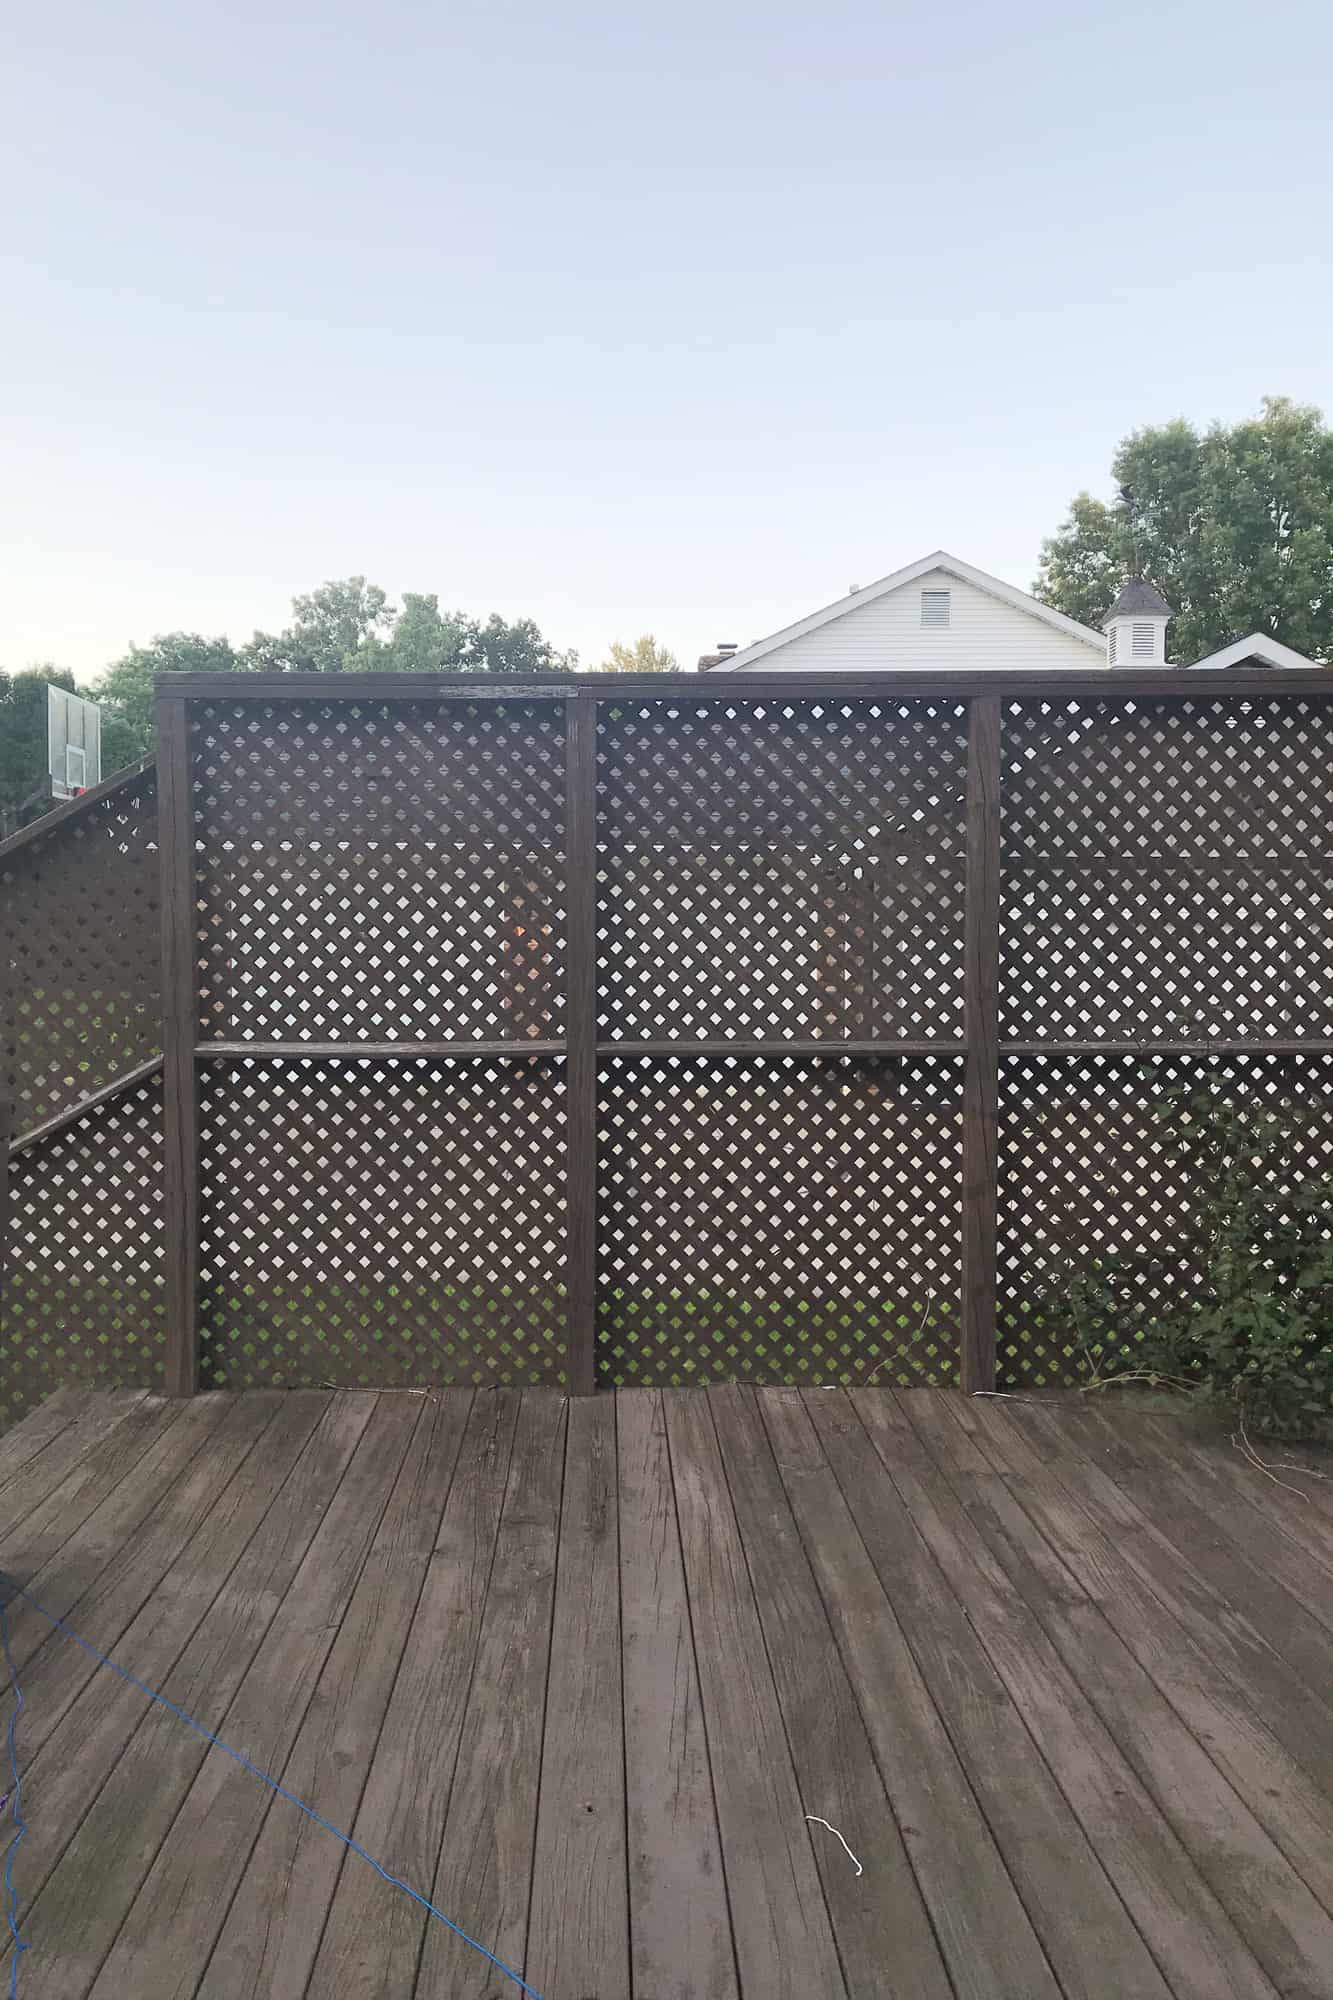 3 privacy decorative lattice fence ideas 1